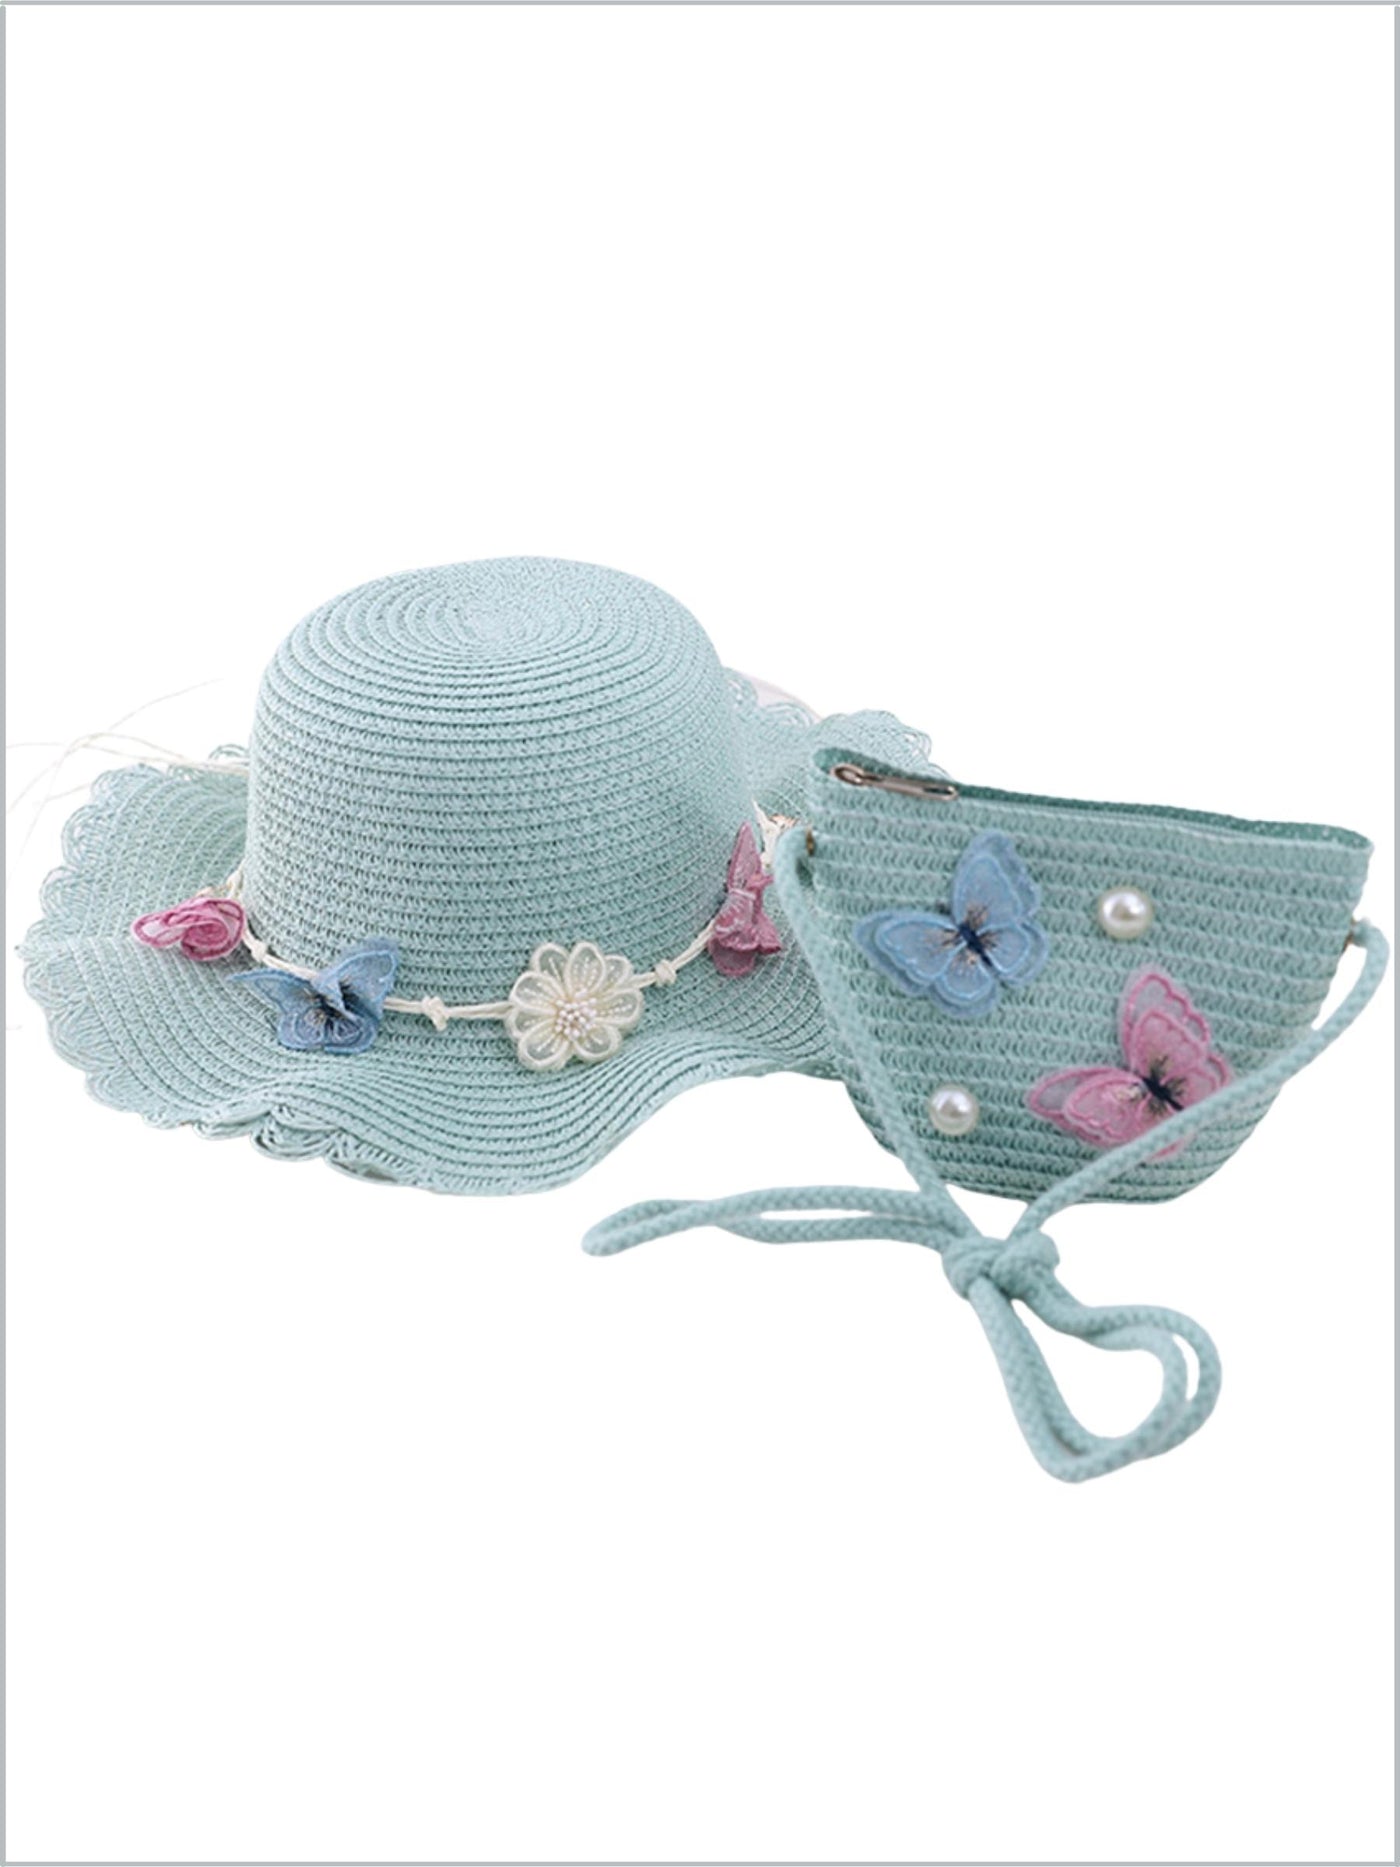 Girls Straw Hat & Purse Set -Blue | Girls Accessories - Mia Belle Girls